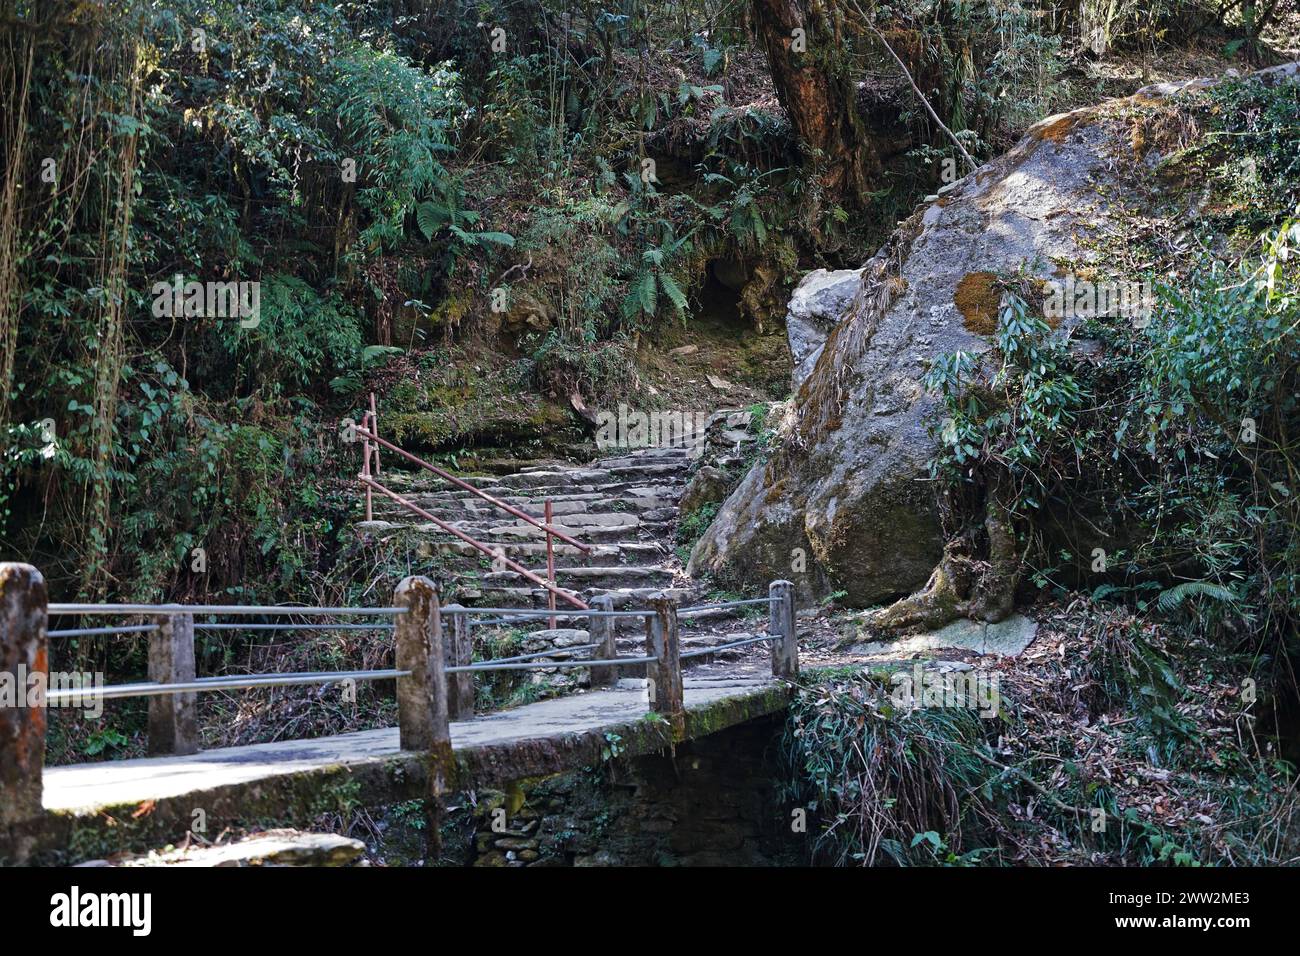 Pont local et marches rocheuses parmi la nature verdoyante le long de la route de trekking à Ghorepani Poon colline, Annapurna Himalaya chaîne - Népal Banque D'Images